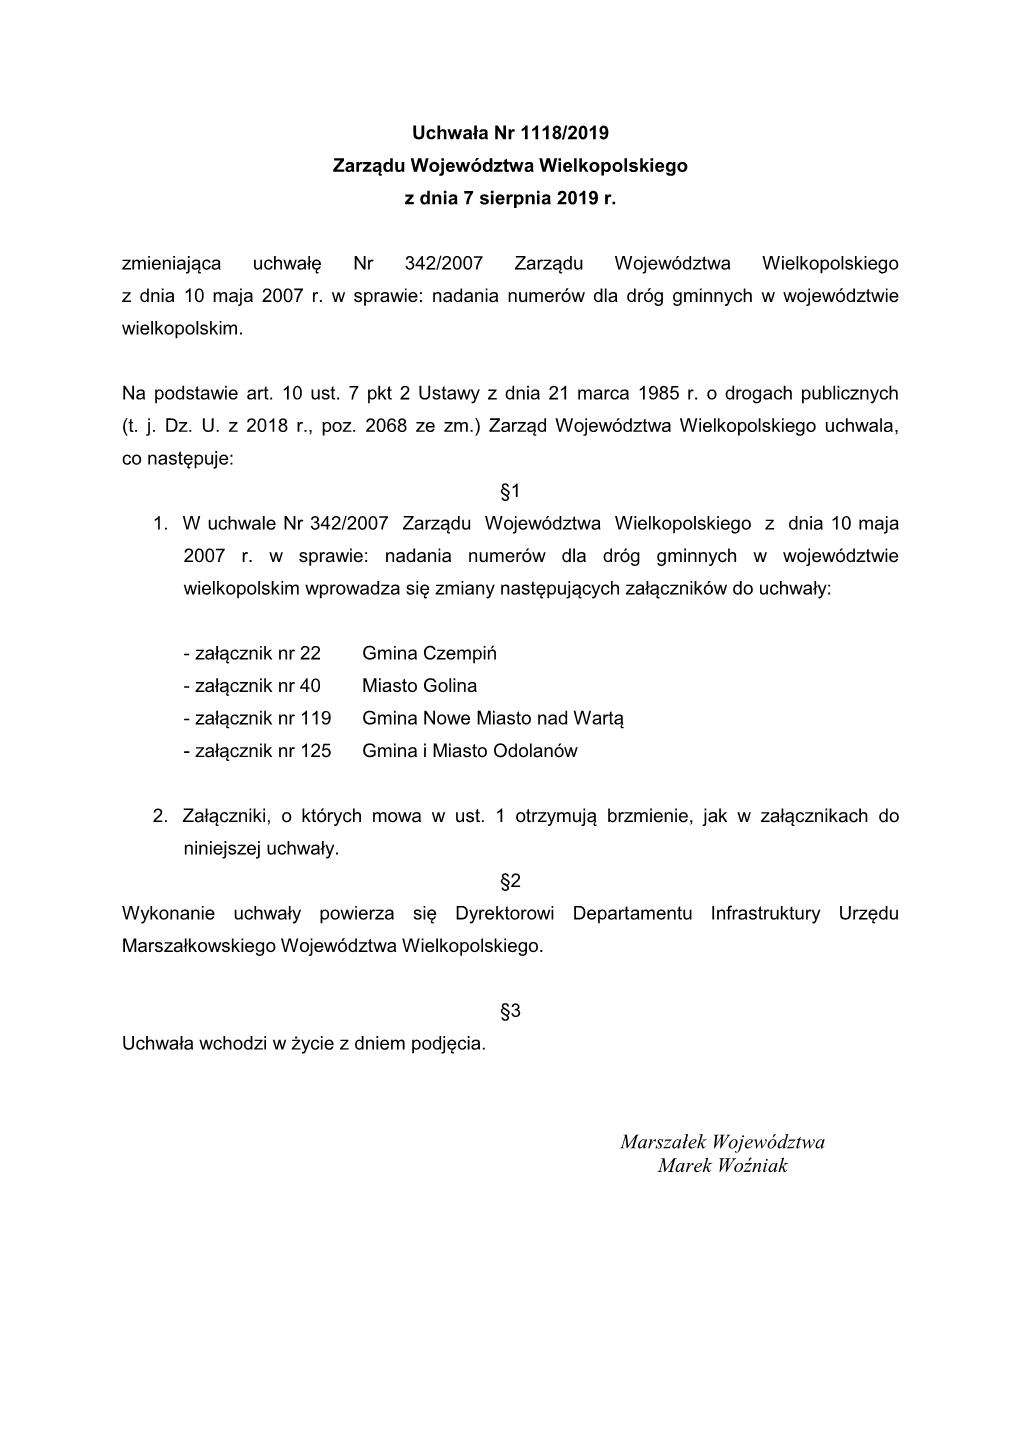 Uchwała Nr 1118/2019 Zarządu Województwa Wielkopolskiego Z Dnia 7 Sierpnia 2019 R